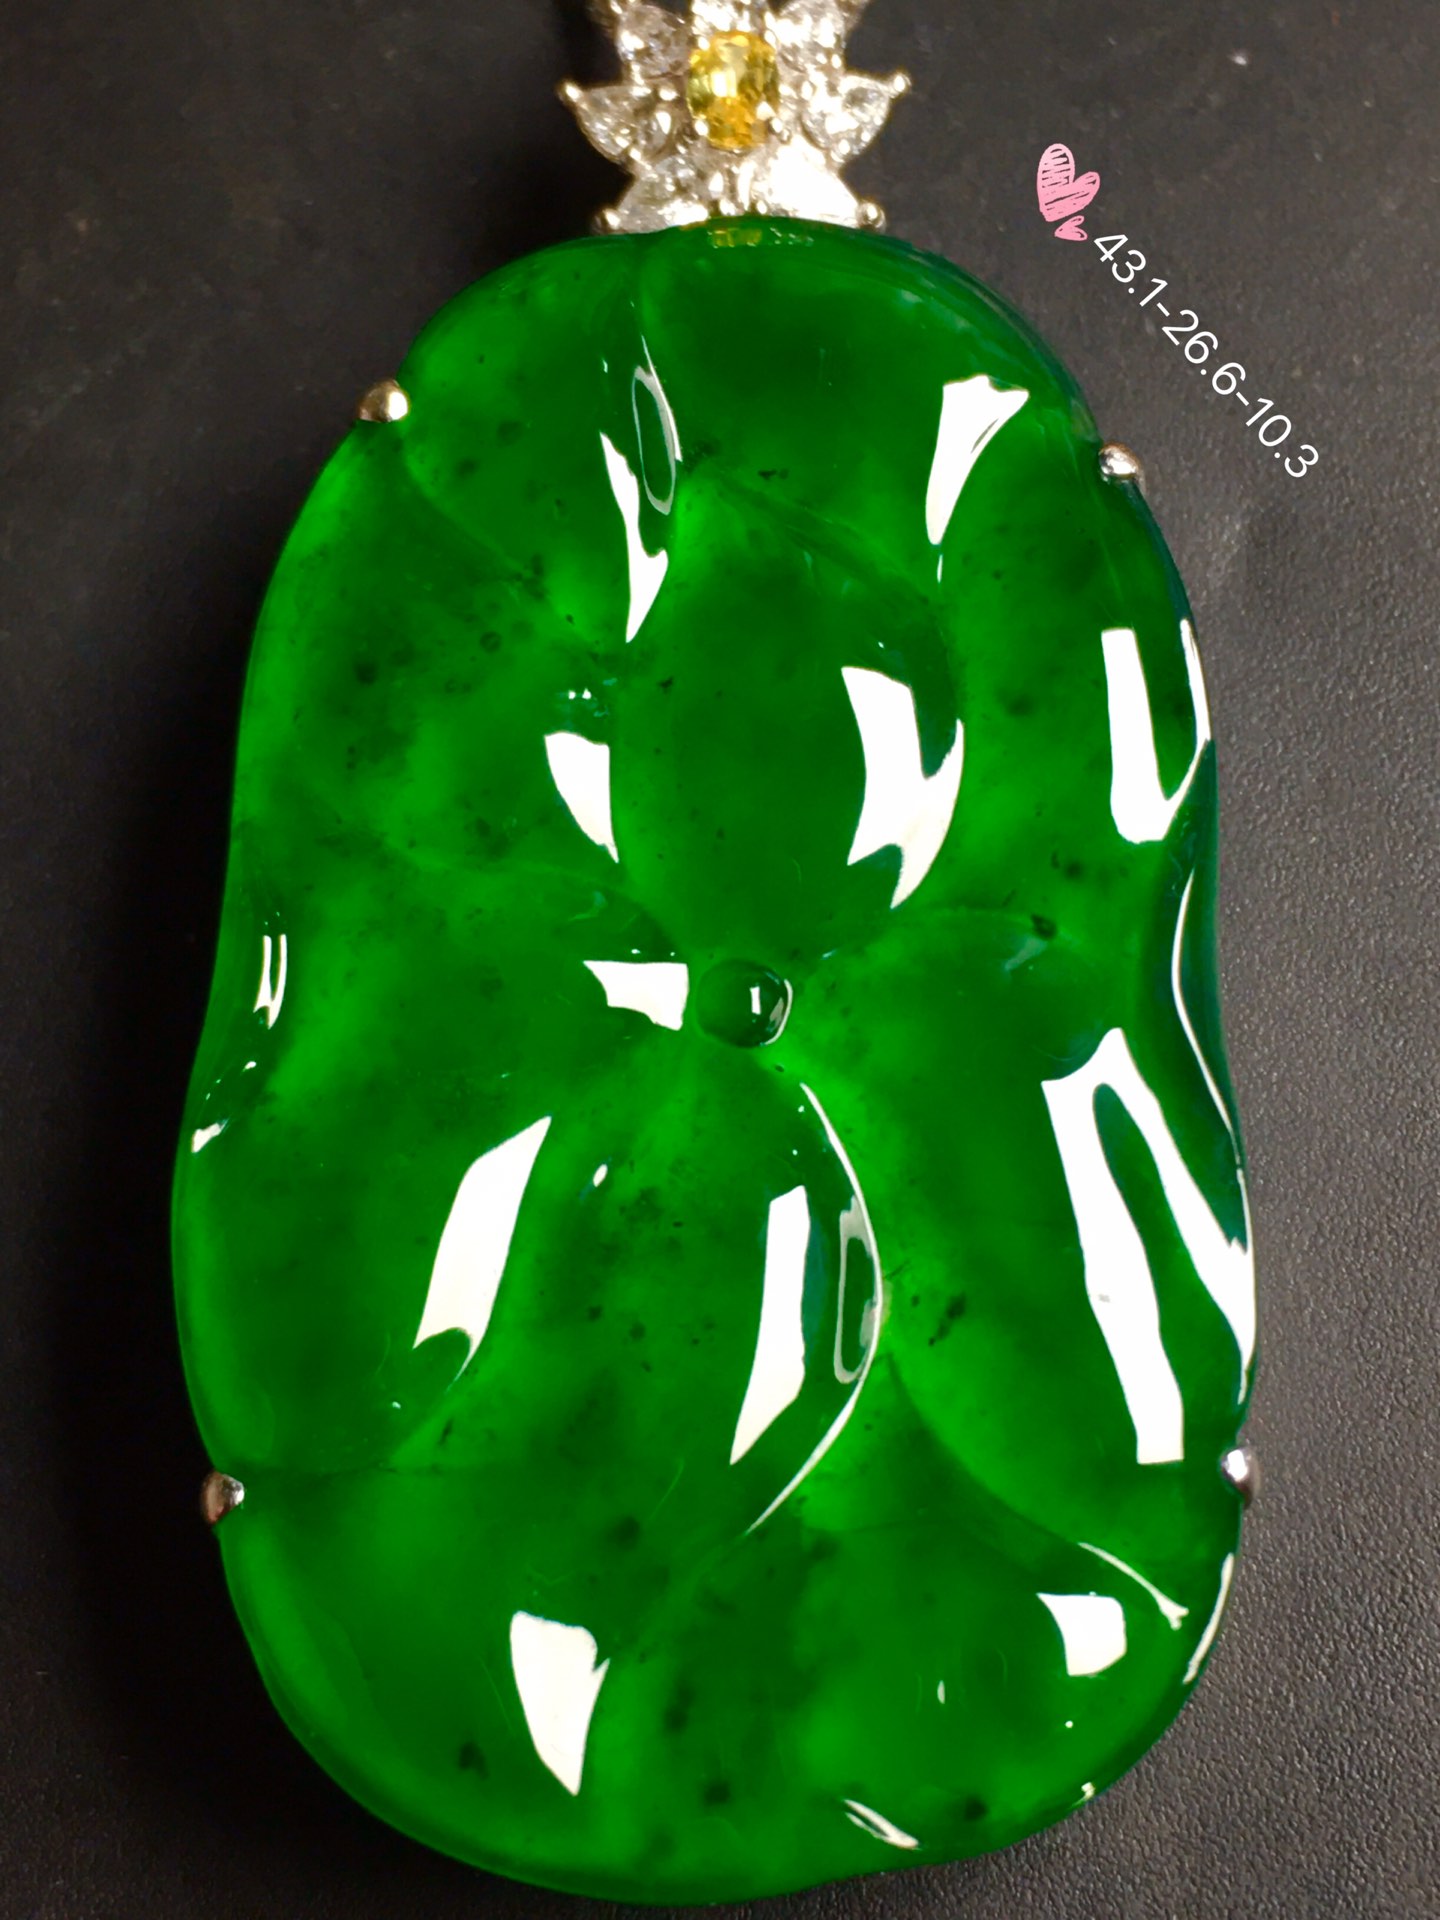 价[色] 【荷叶，和和美美，冰正阳绿】水润通透，玉质细腻，完美无暇，18k金奢华钻石镶嵌☕